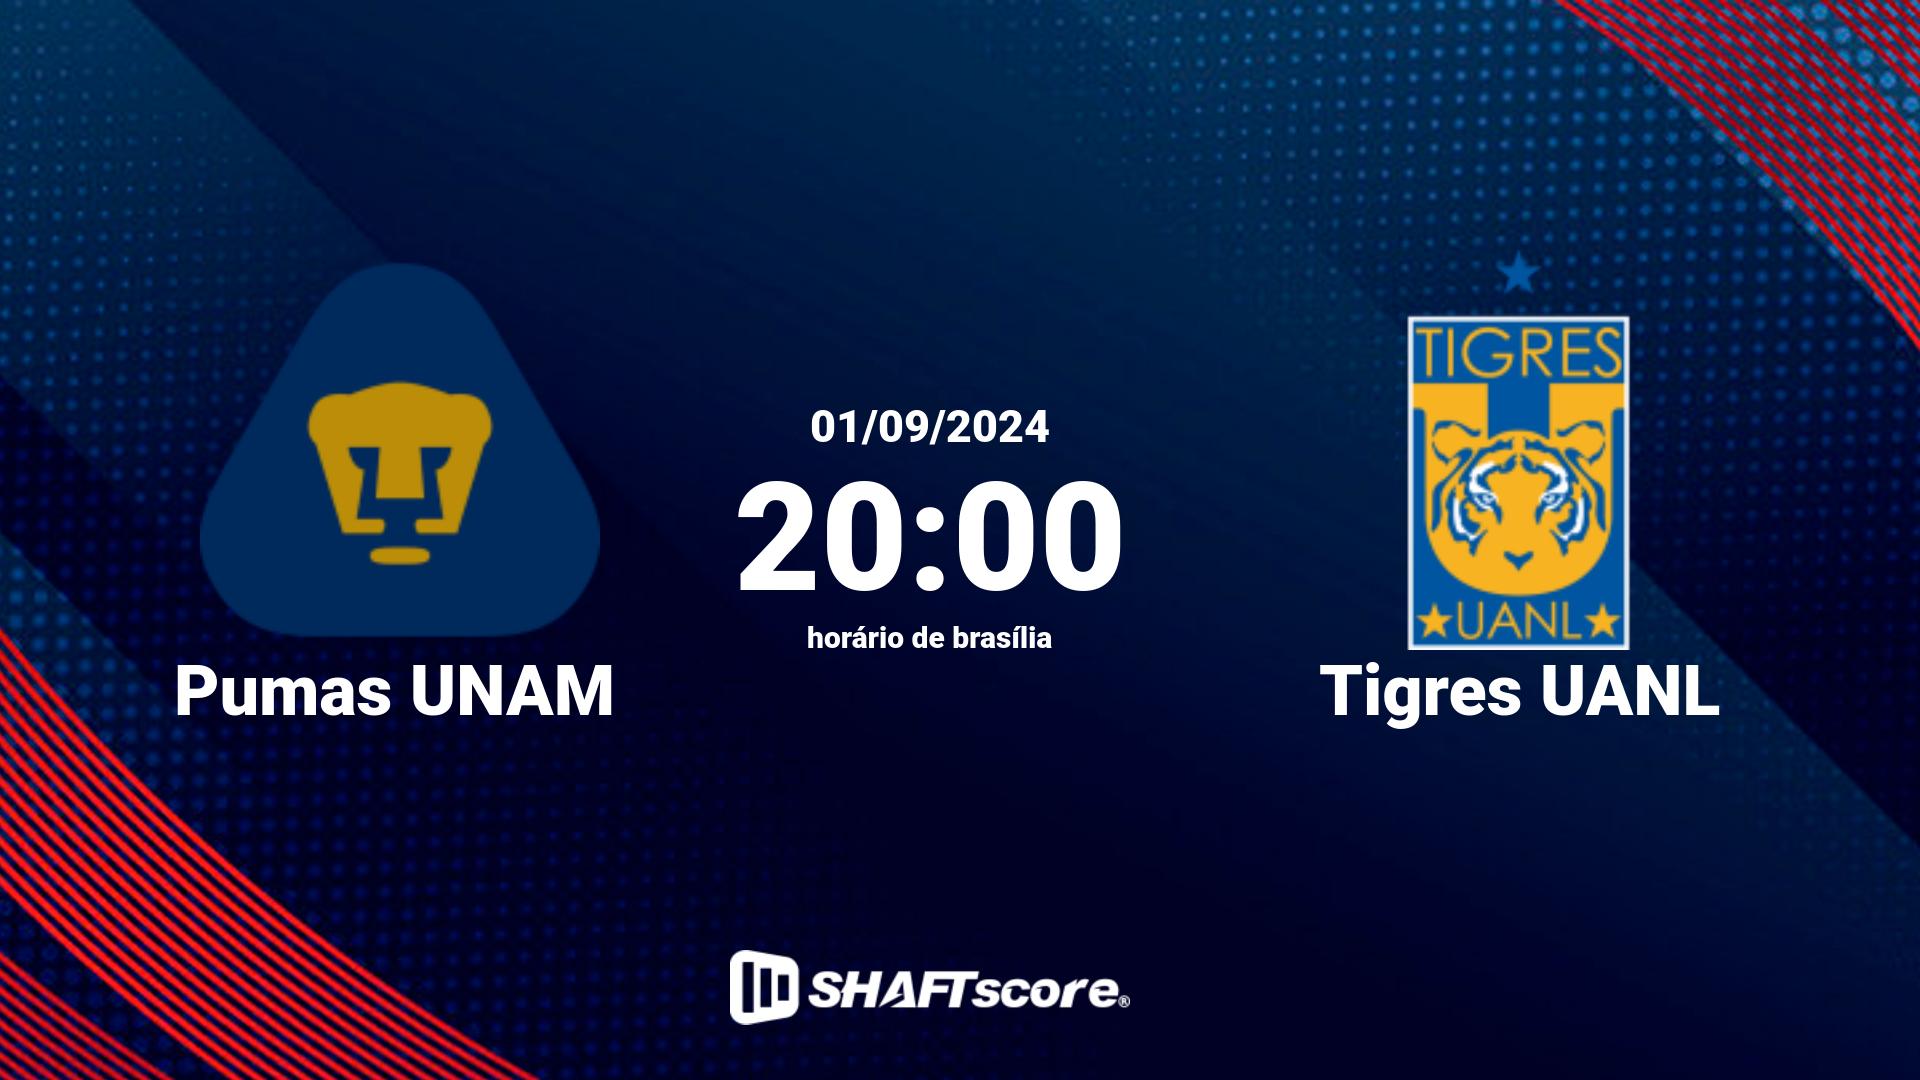 Estatísticas do jogo Pumas UNAM vs Tigres UANL 01.09 20:00